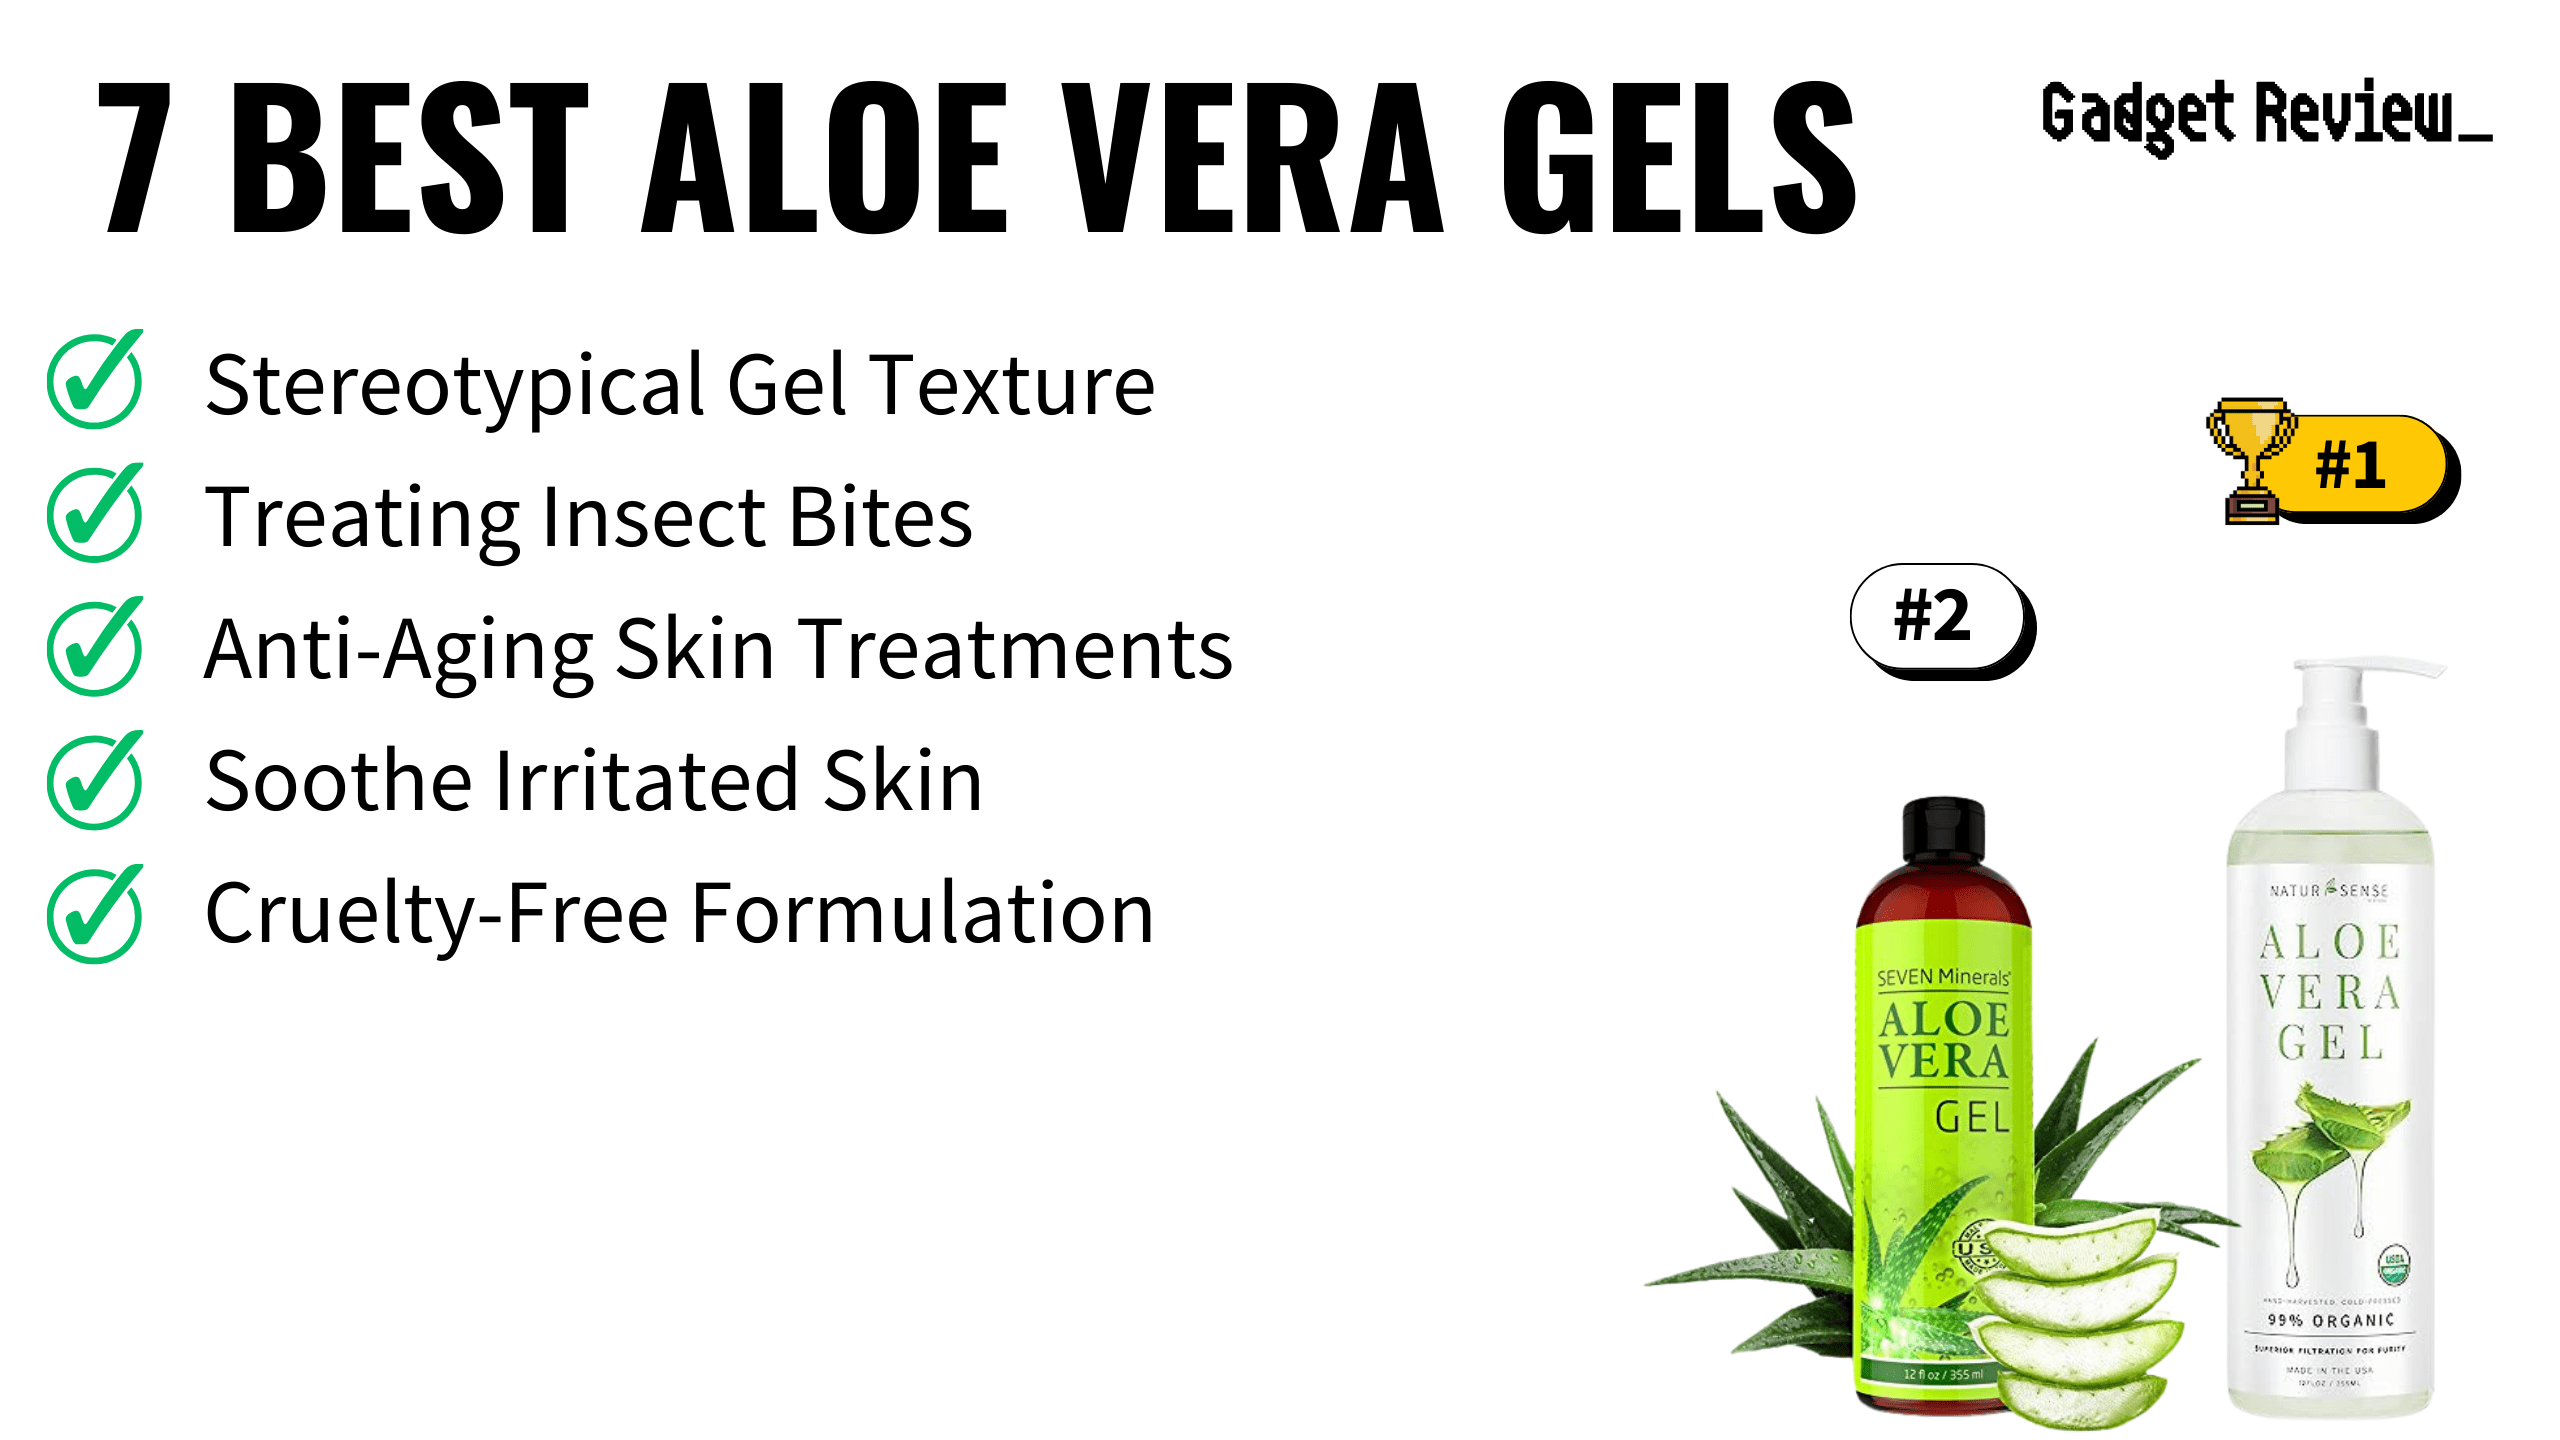 7 Best Aloe Vera Gels